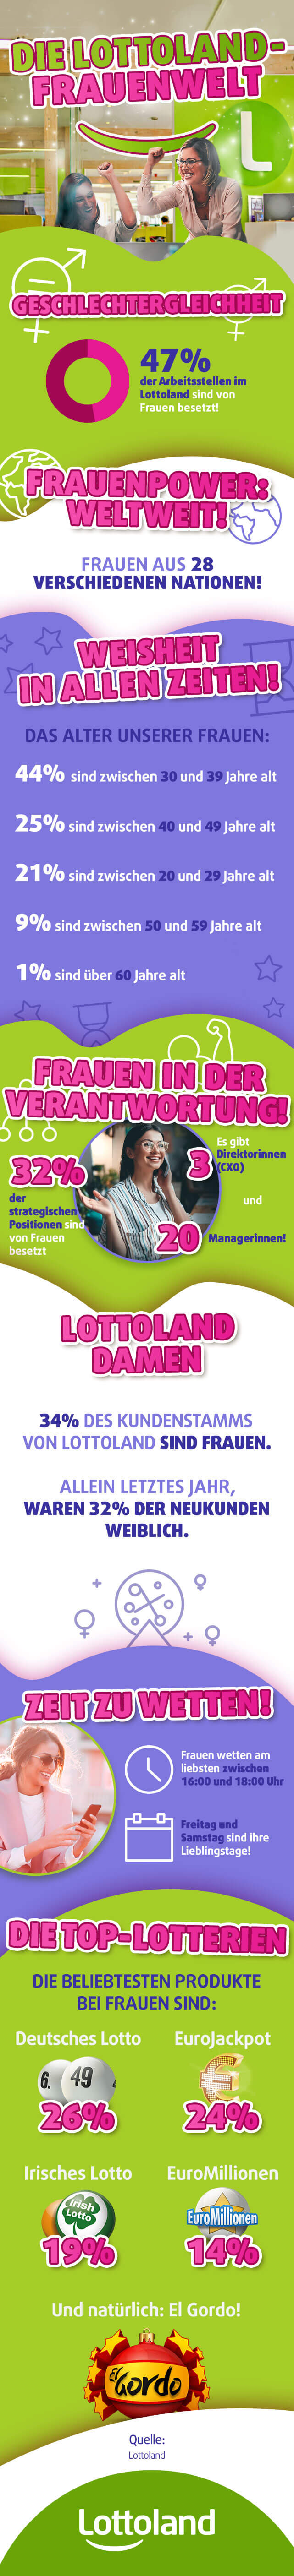 Infografik zum Weltfrauentag mit Fakten über Frauen im Lottoland